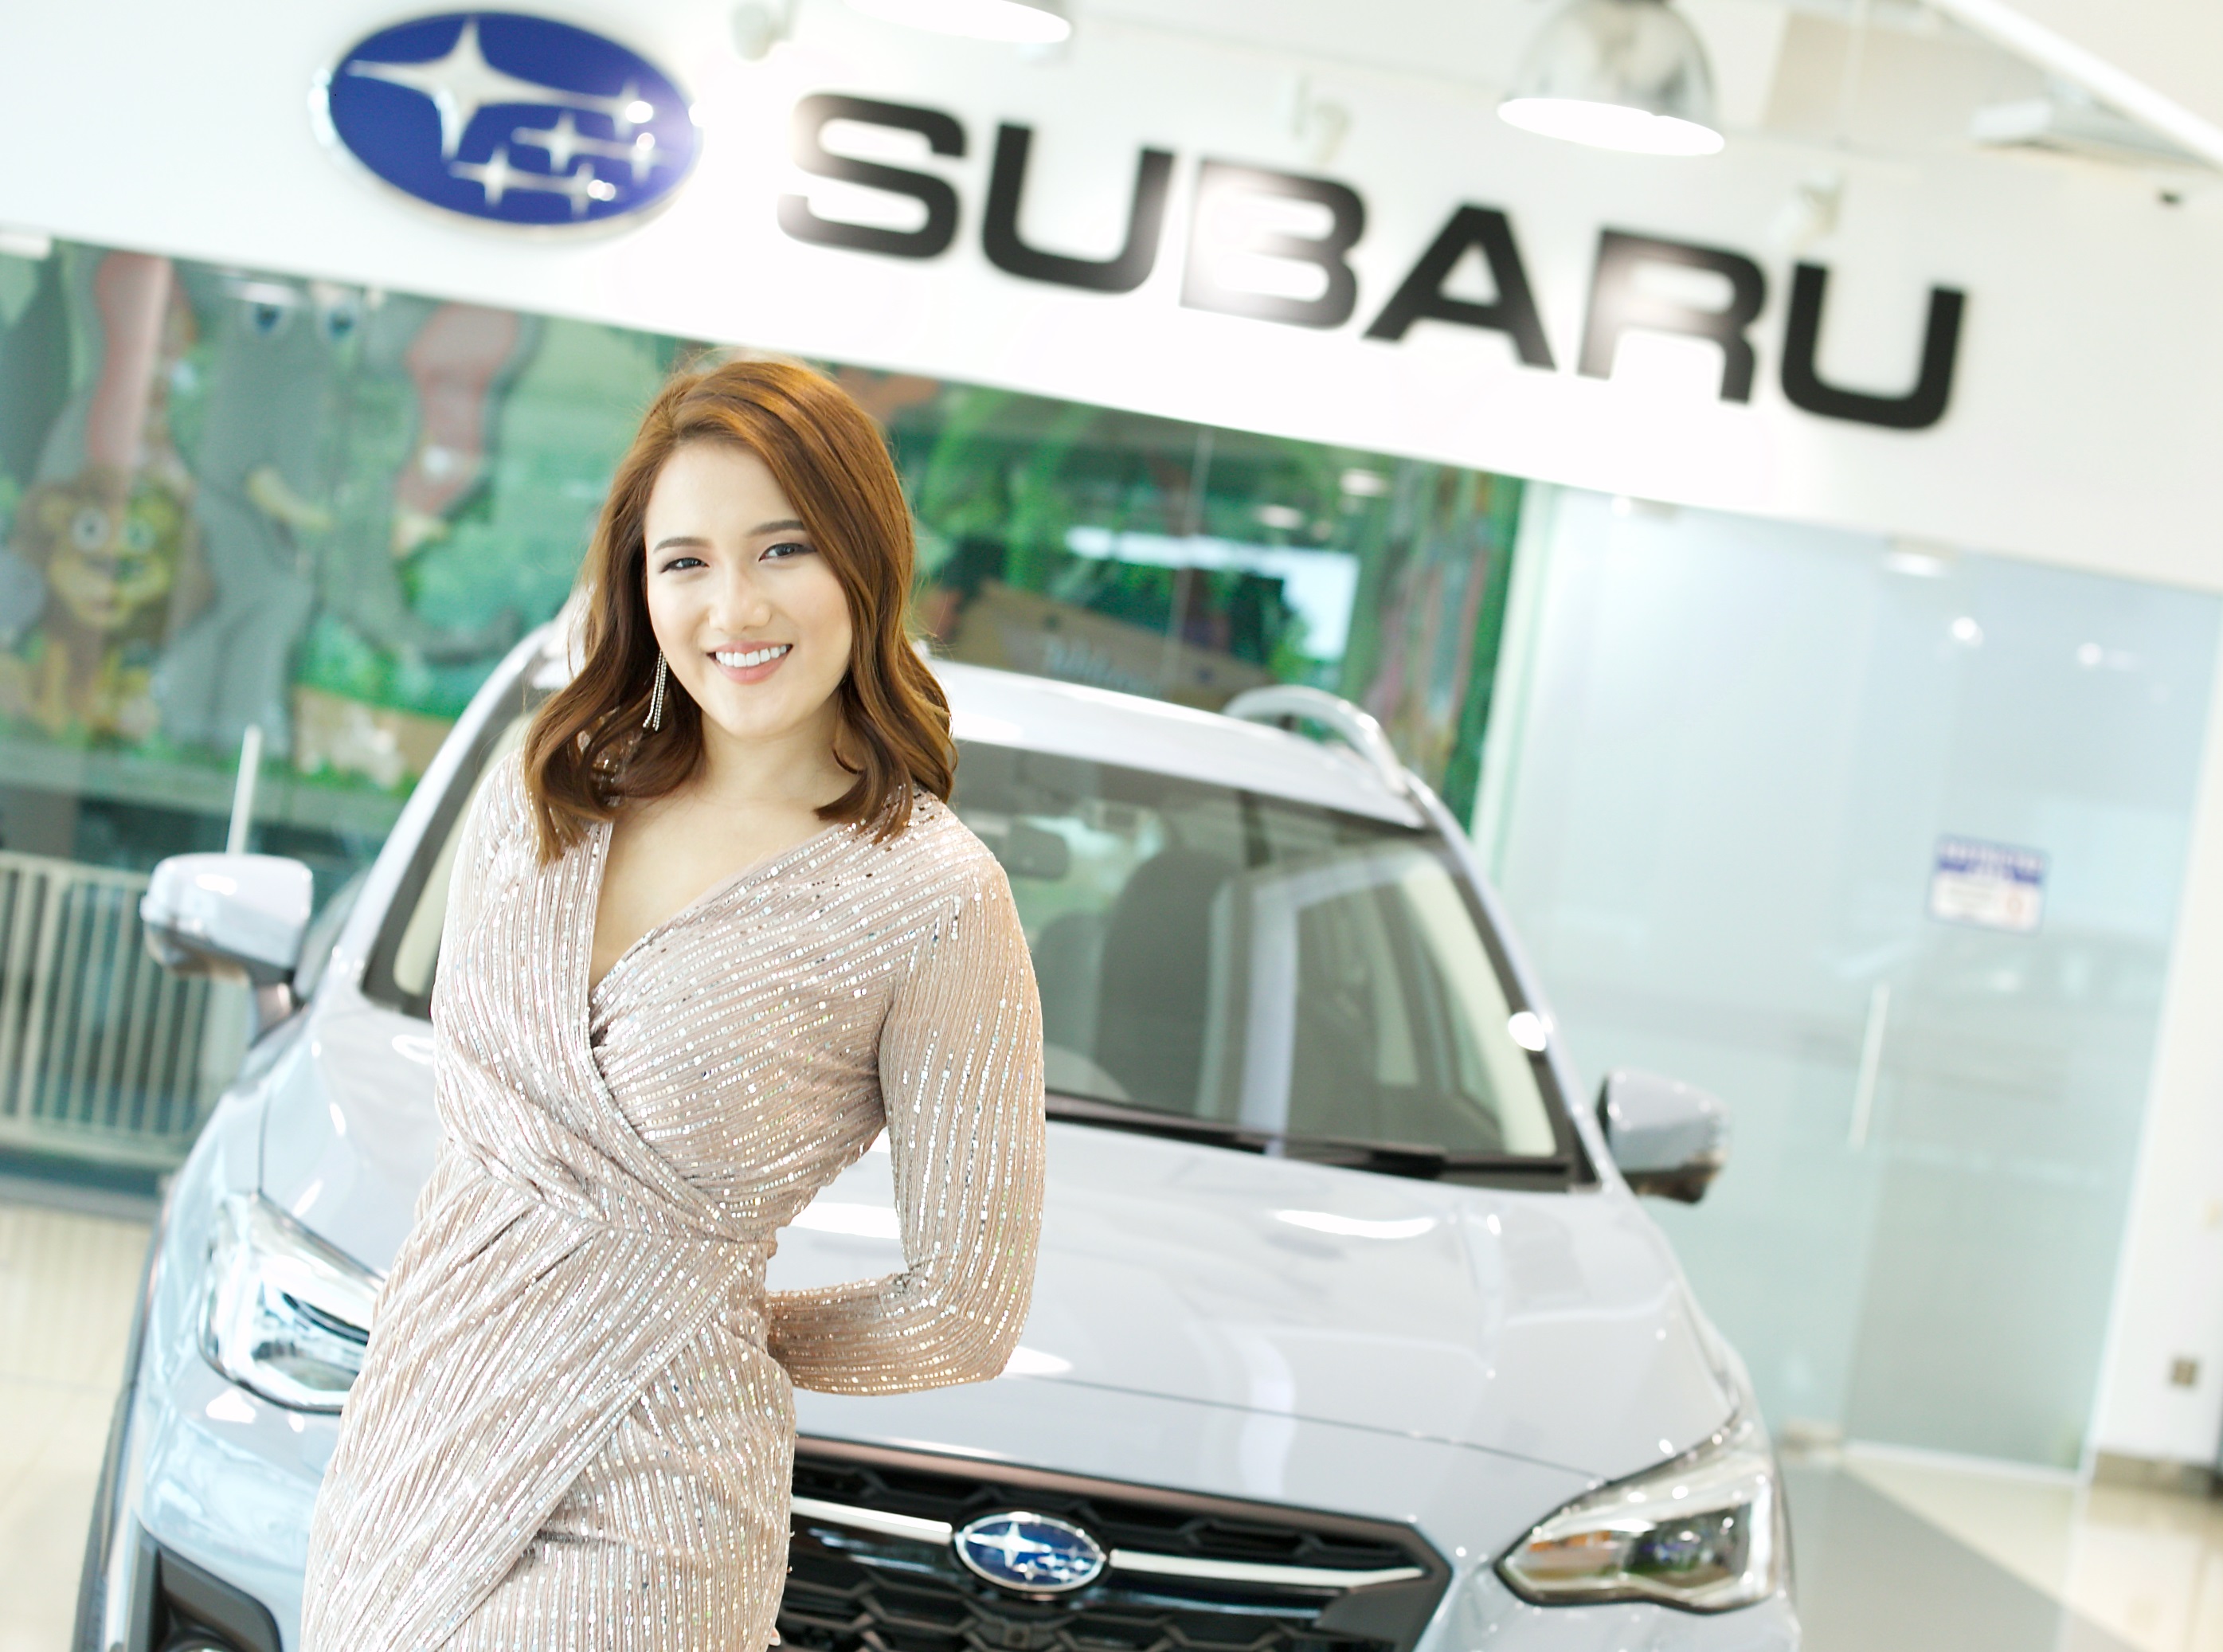 新加坡選手 Tyen Rasif 取得《亞洲之星 夢想啟航》音樂選秀節目冠軍，未來 Tyen 將與麥可·波頓（Michael Bolton）一同參加《亞洲之星 夢想啟航》巡迴演唱會之旅，並成為 Subaru 亞洲區的品牌大使及獲得一台Subaru XV。